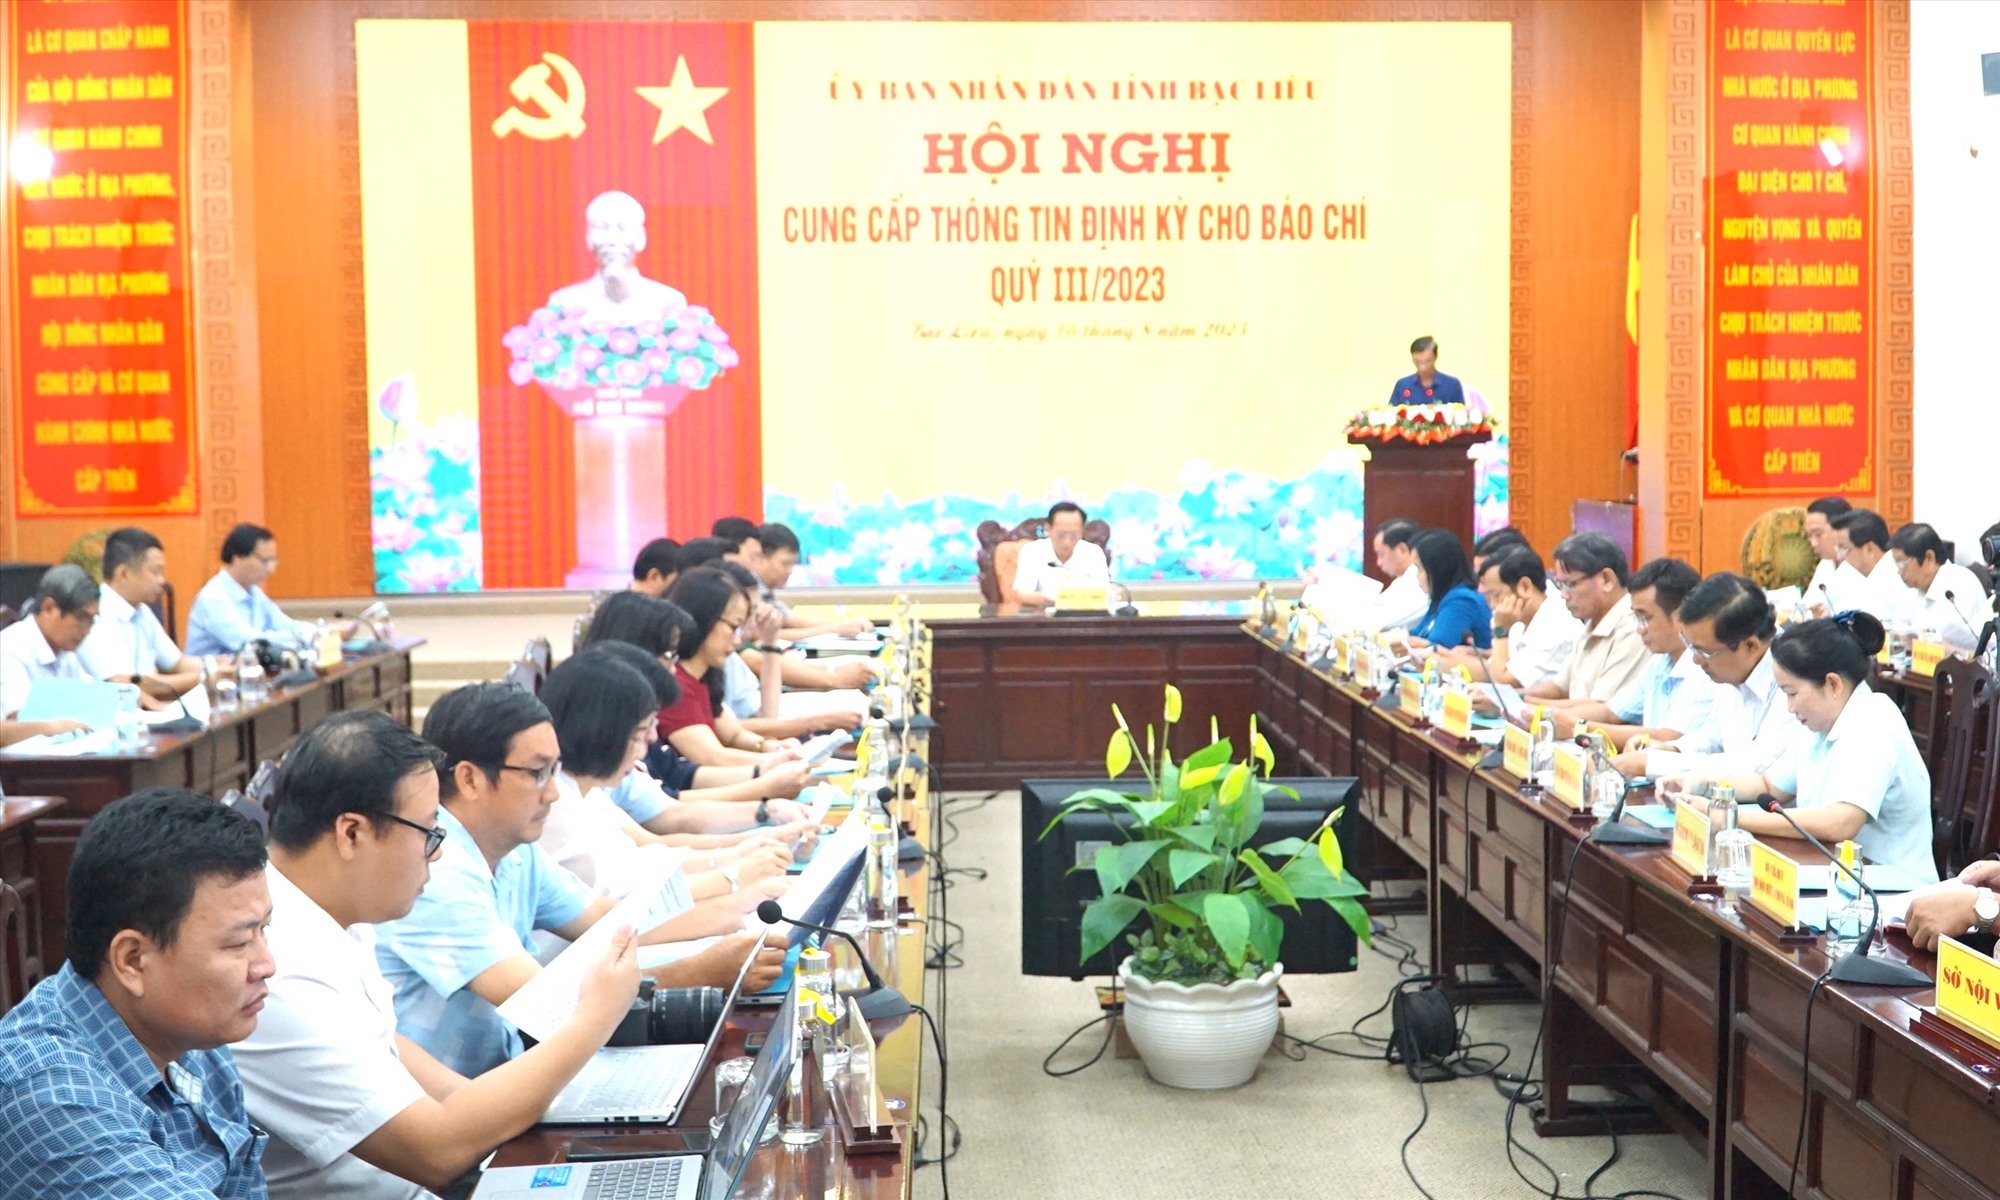 Chủ tịch UBND tỉnh Bạc Liêu Phạm Văn Thiều chủ trì buổi họp báo cung cấp thông tin cho báo chí. Ảnh: Nhật Hồ